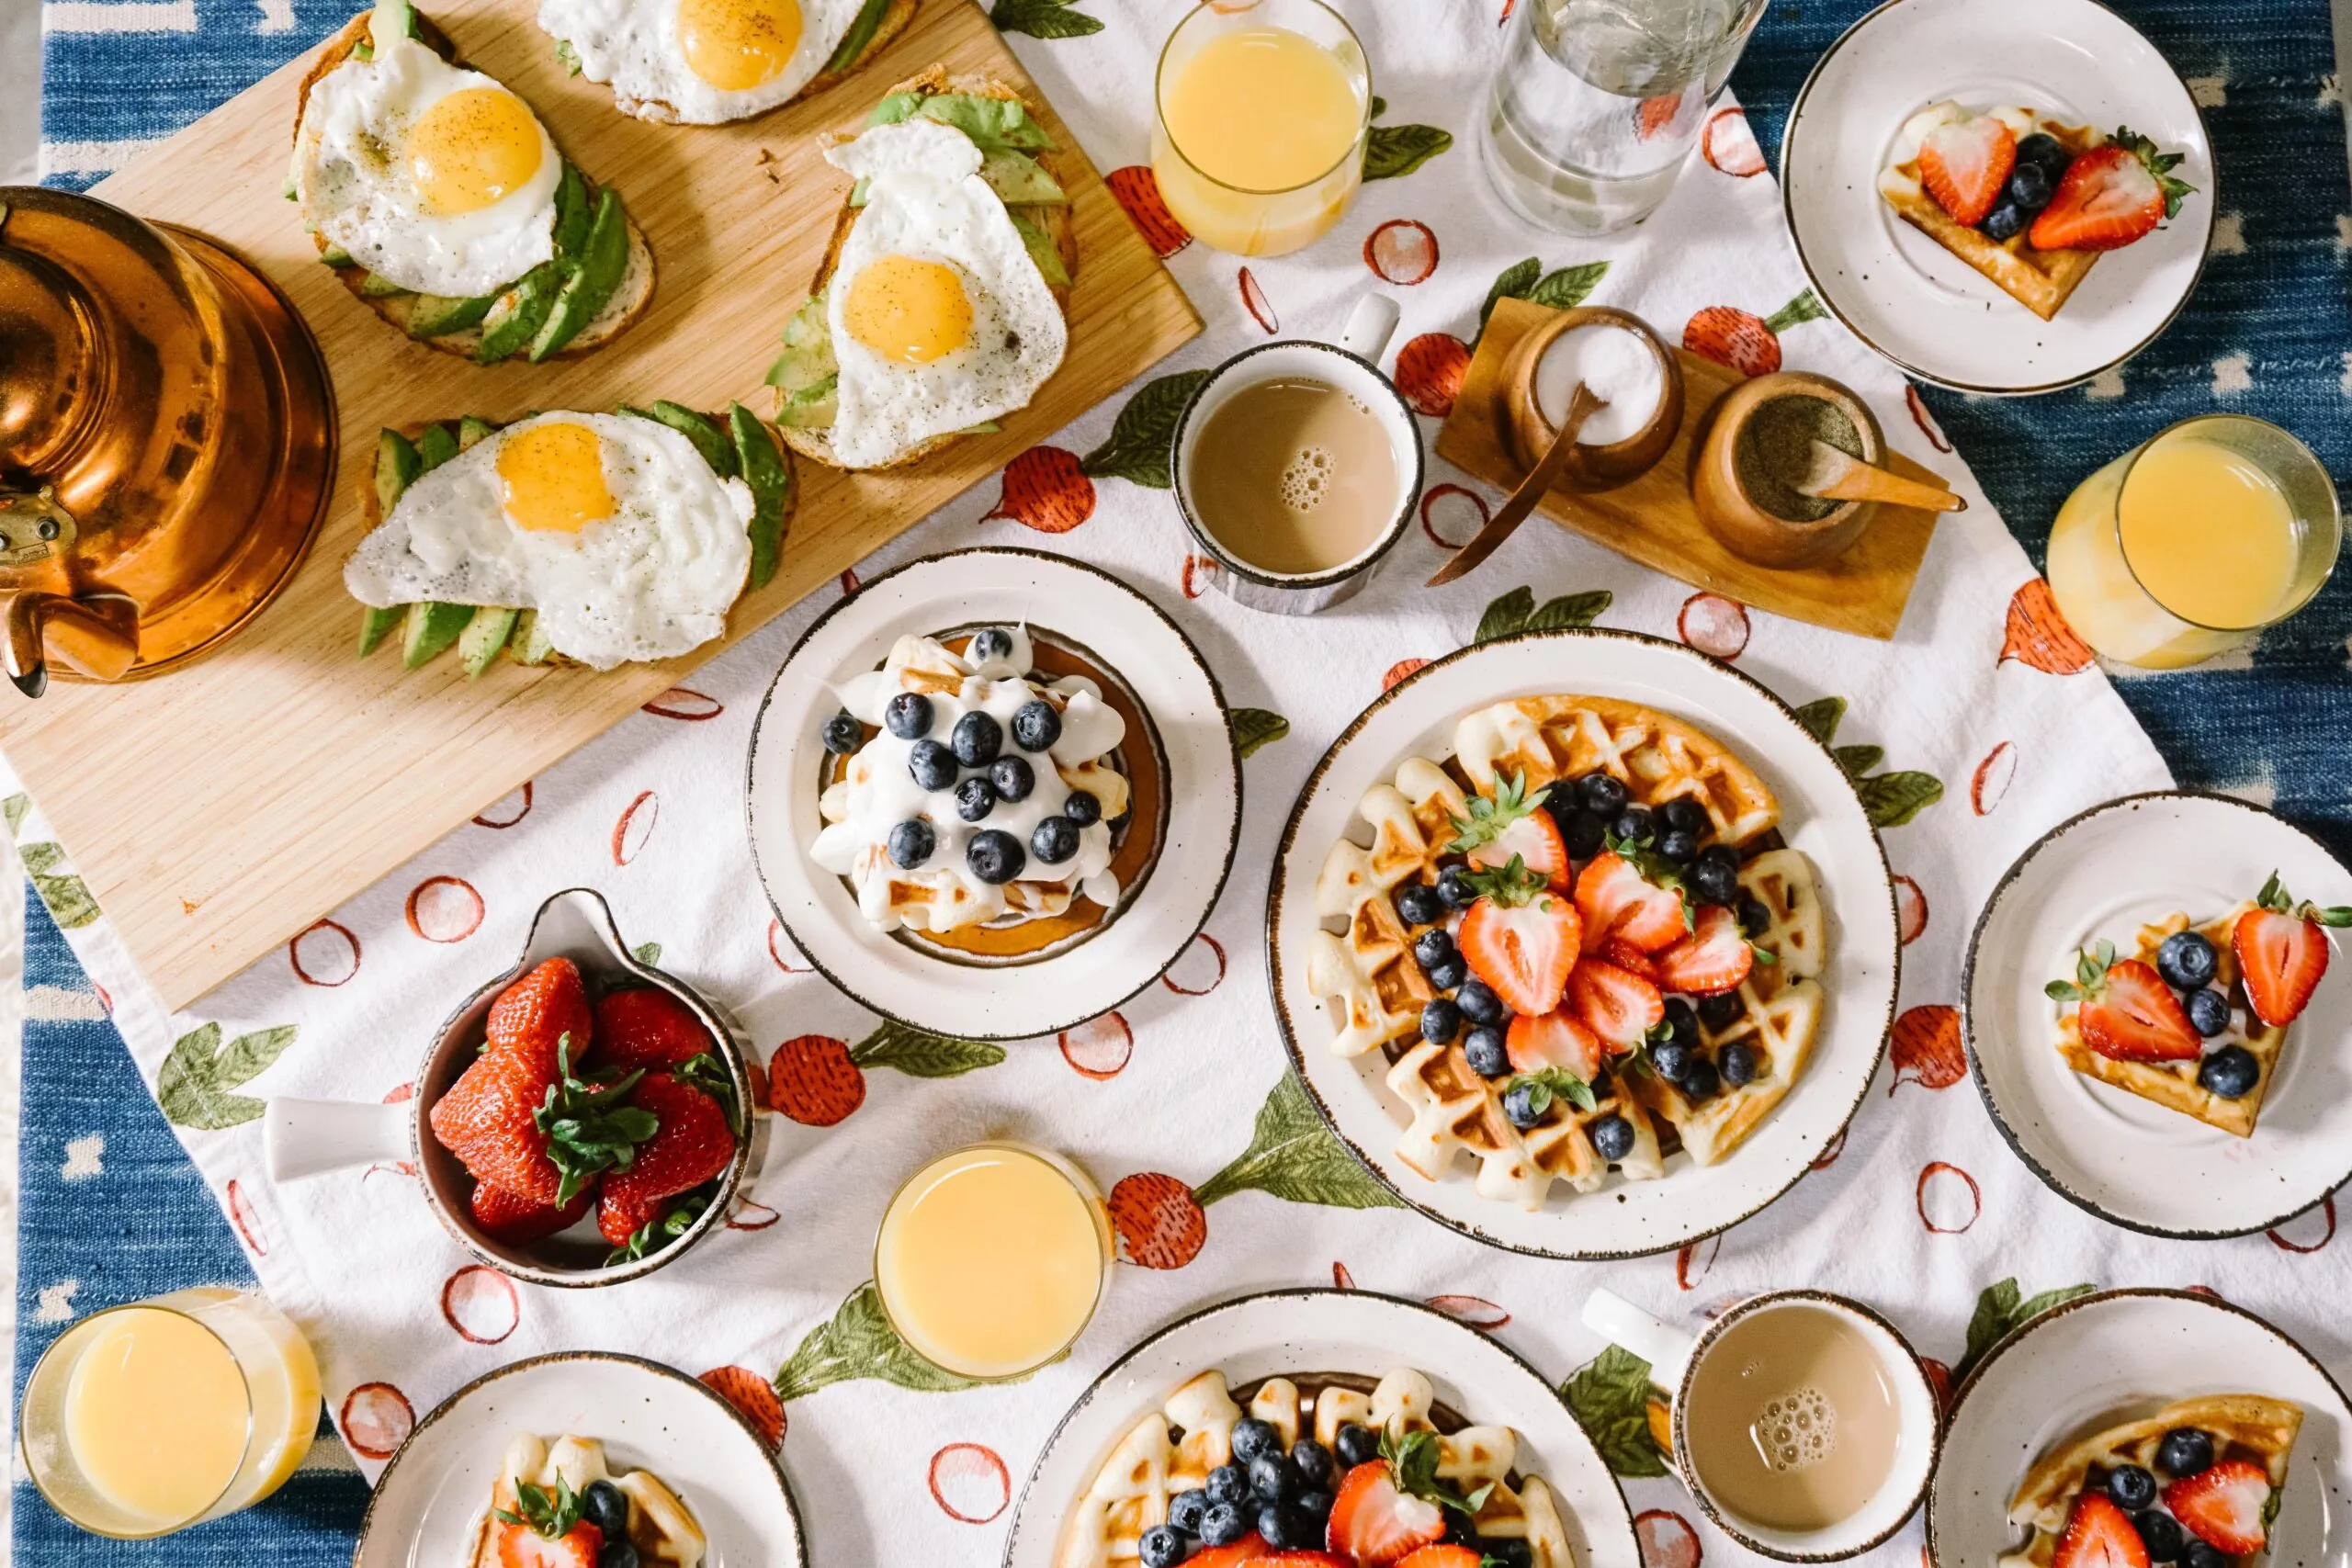 Breakfast food on plates with juice